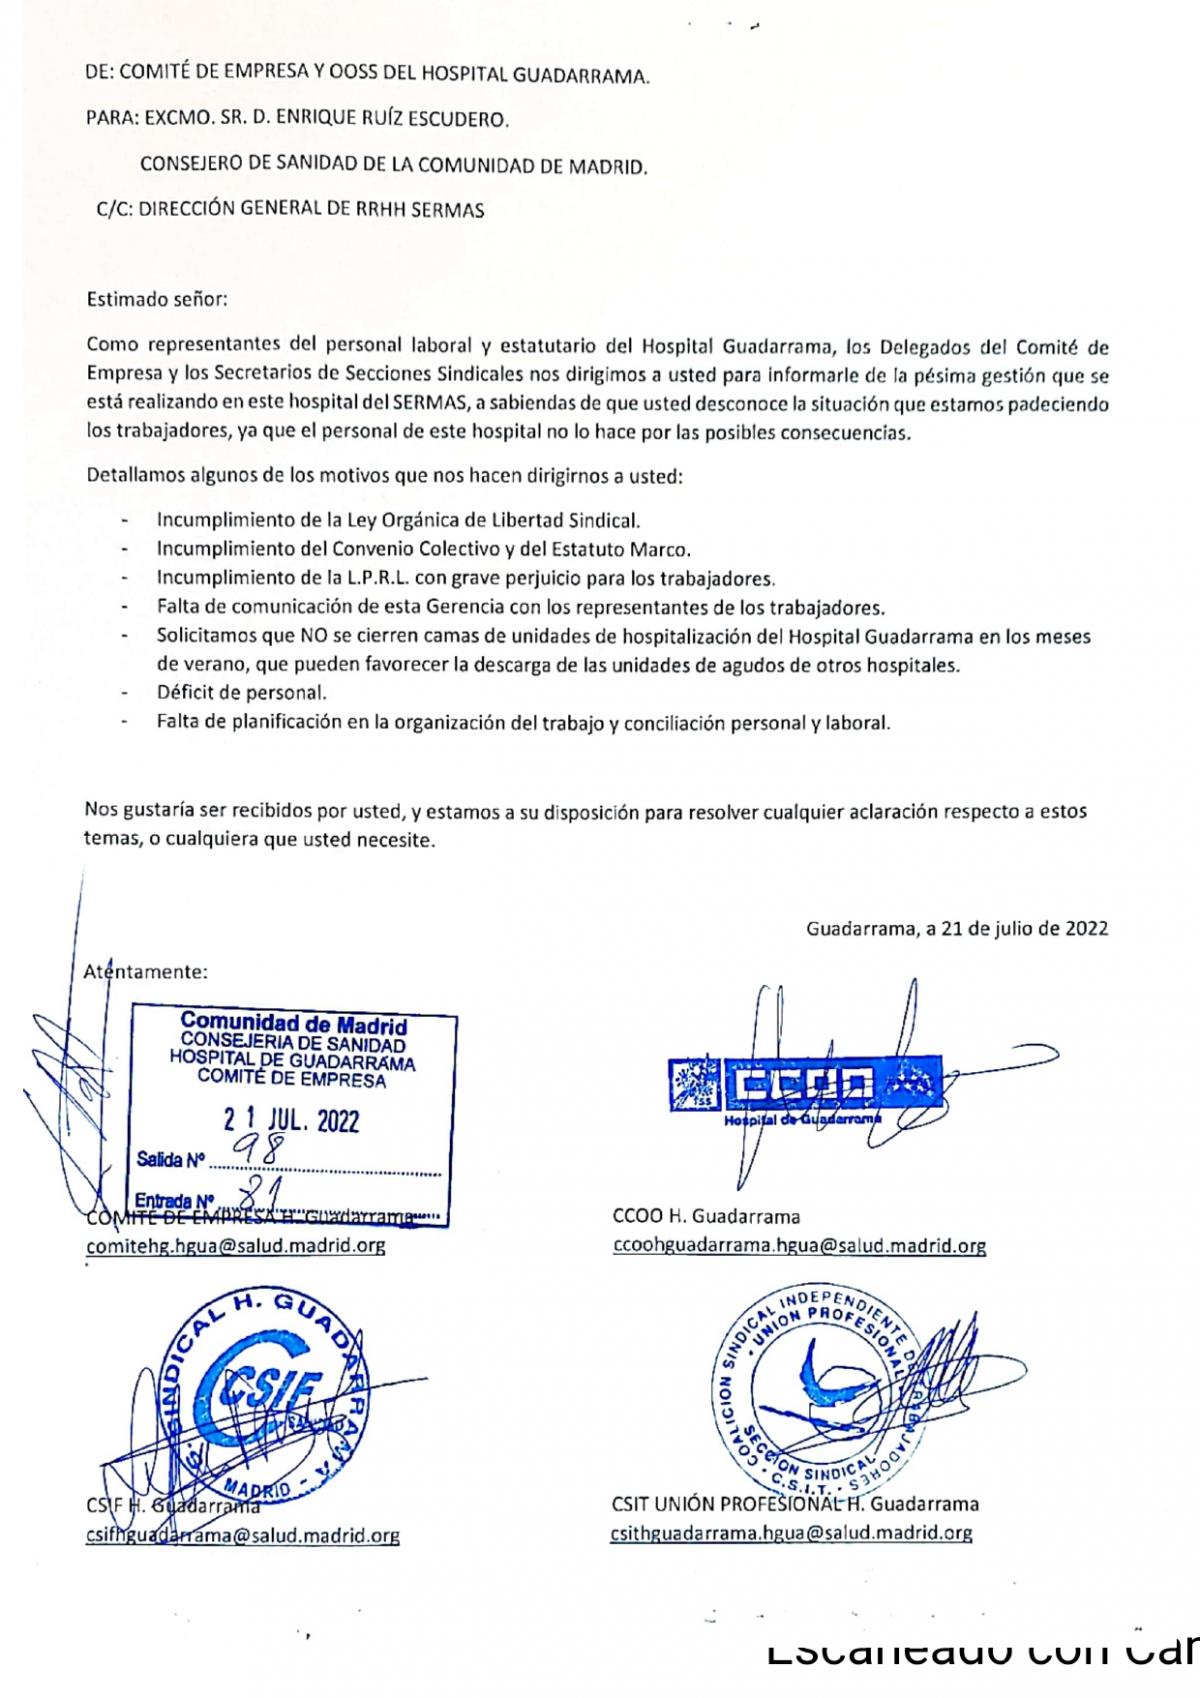 Carta entregada al consejero de Sanidad de la Comunidad de Madrid